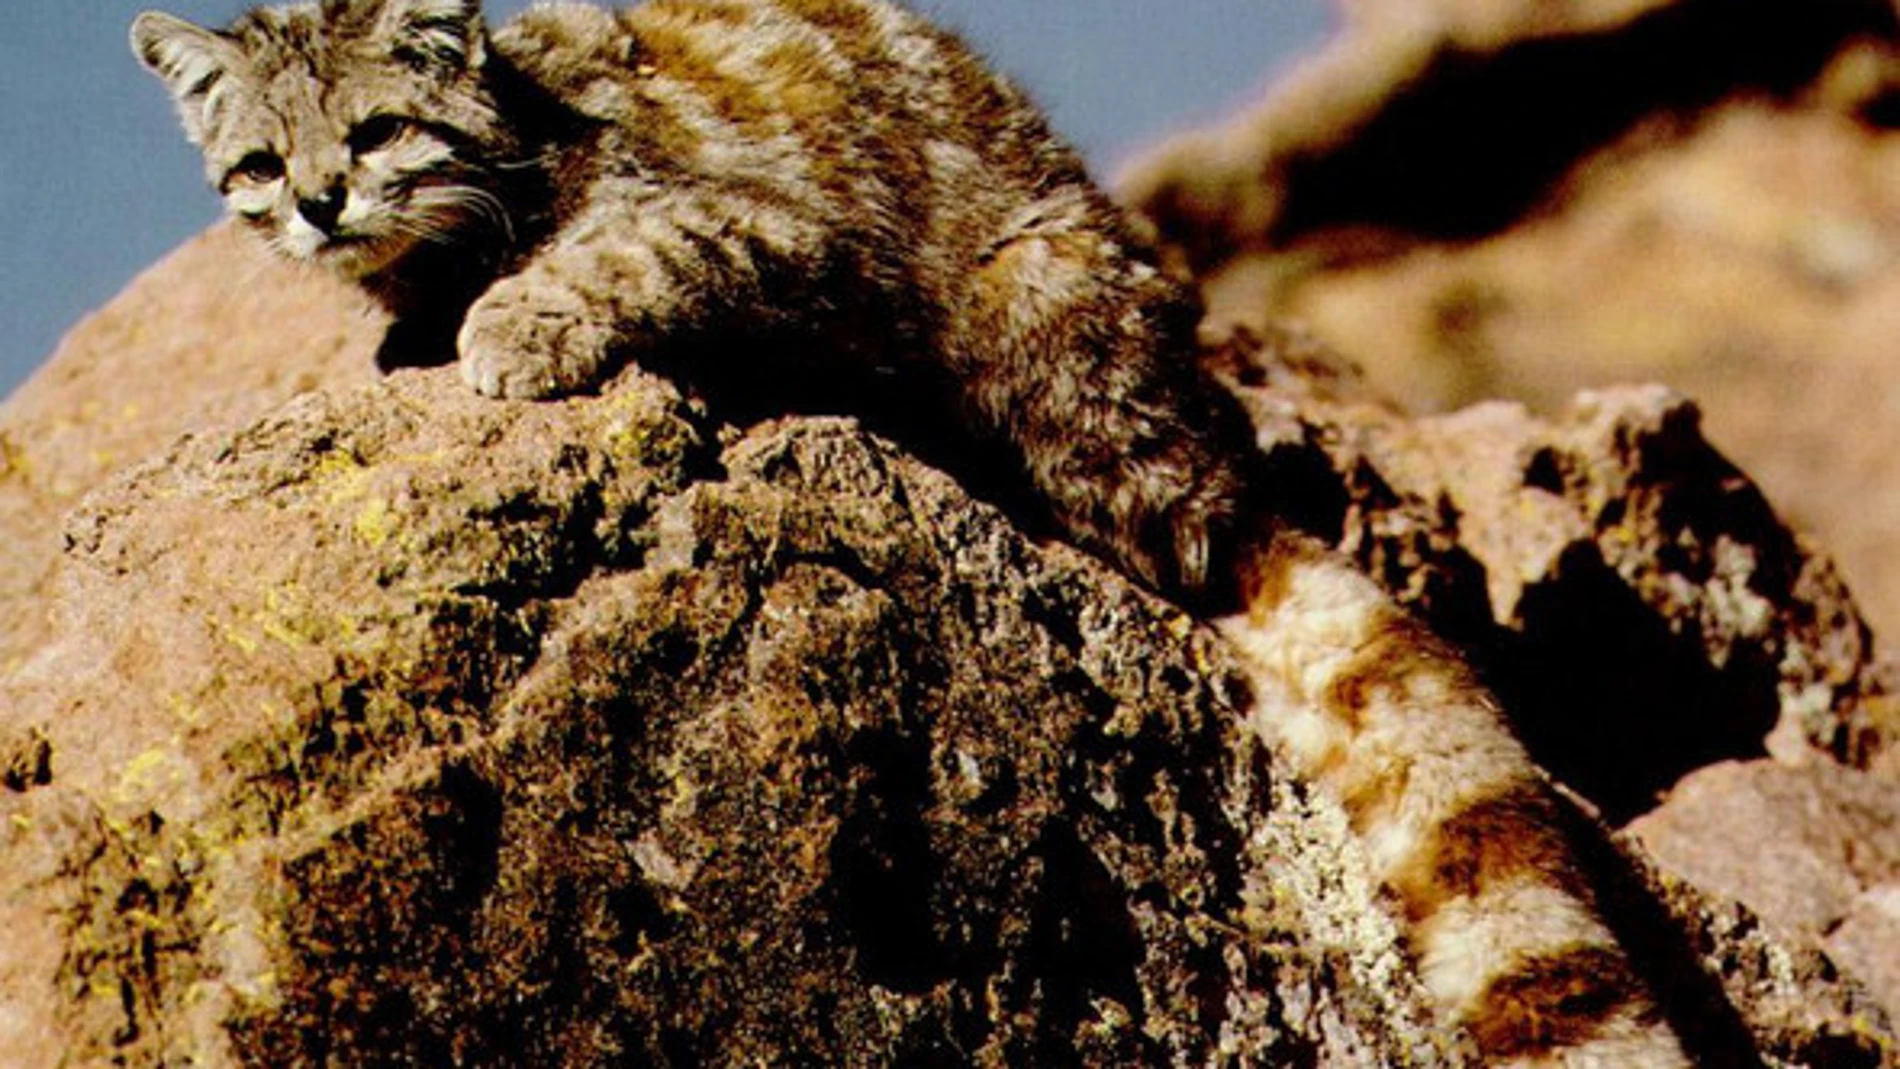 El gato andino (Leopardus jacobita) es uno de los felinos más amenazados del mundo